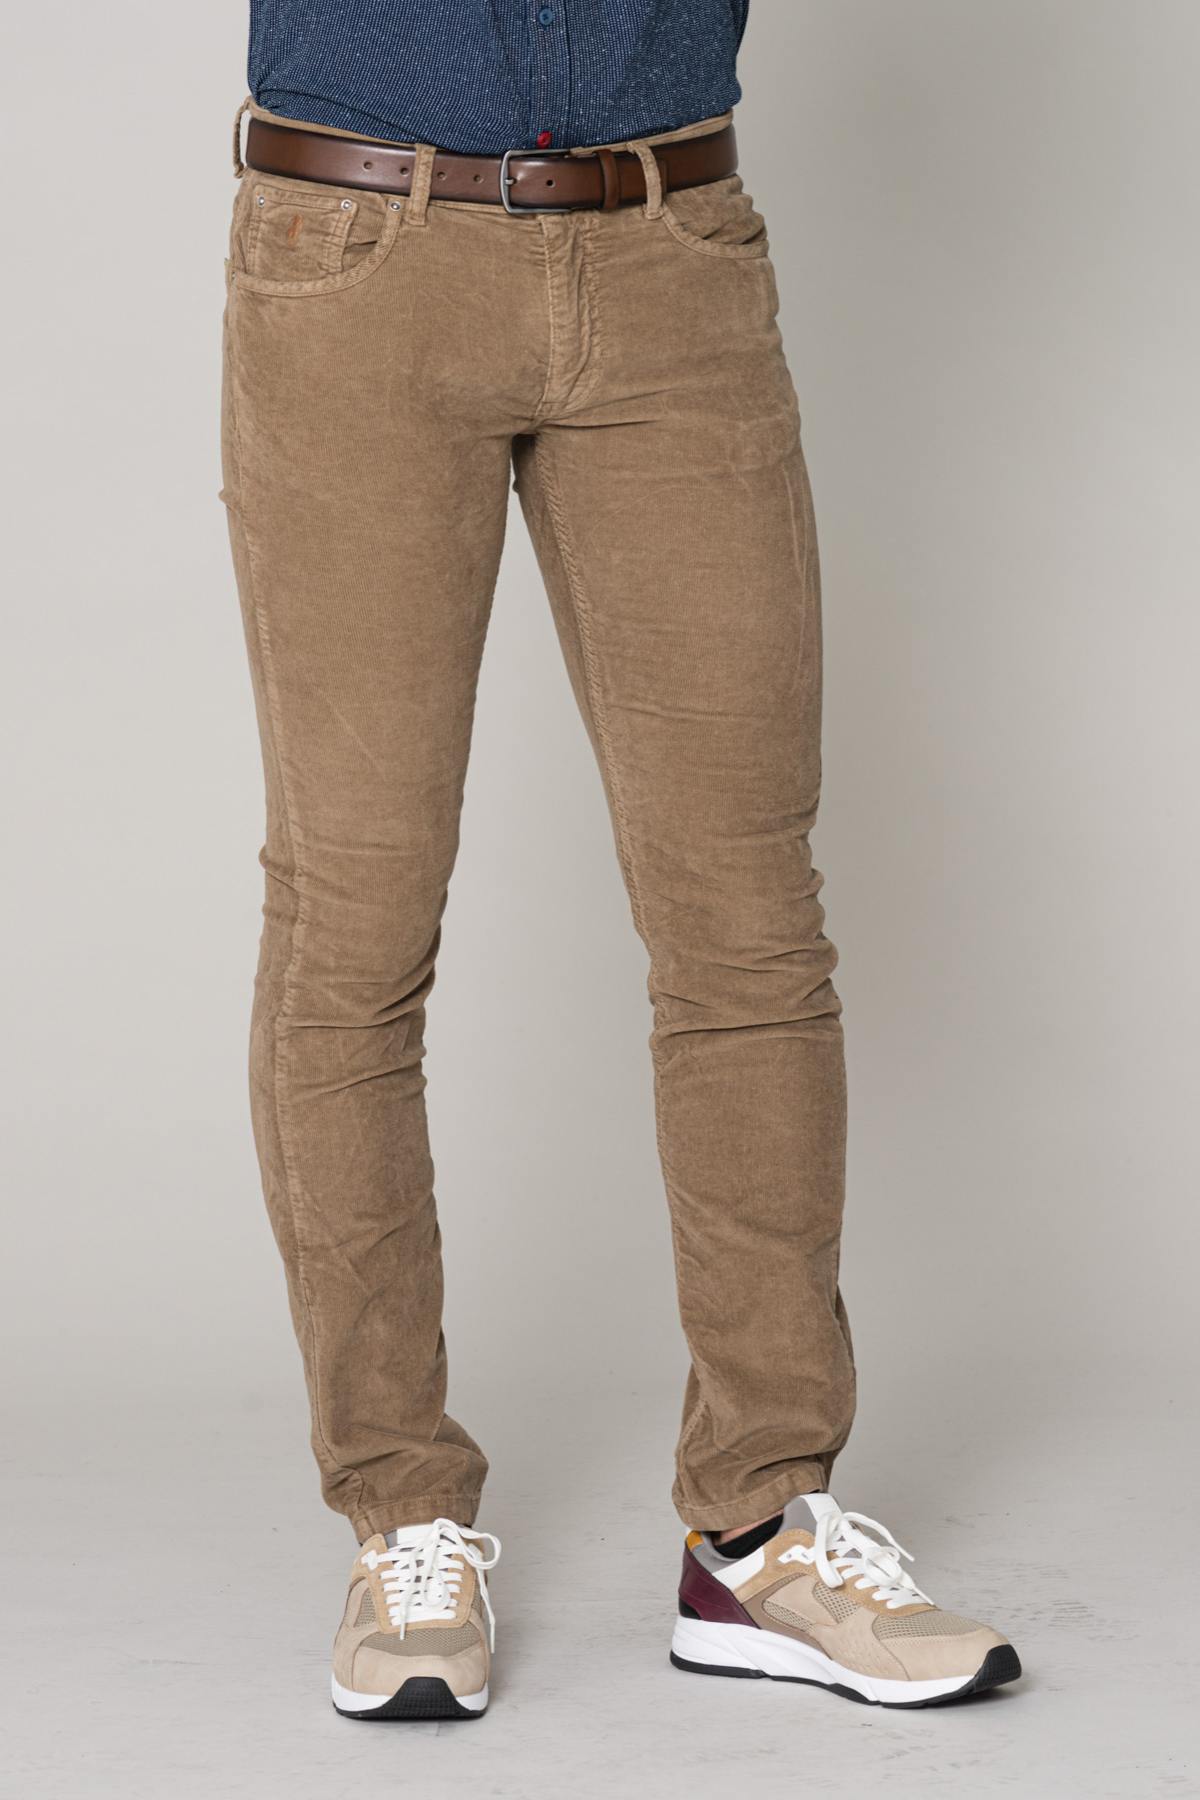 herren-jeans-mcs-jean-c0950-006-beige-velours-leder-jack-de